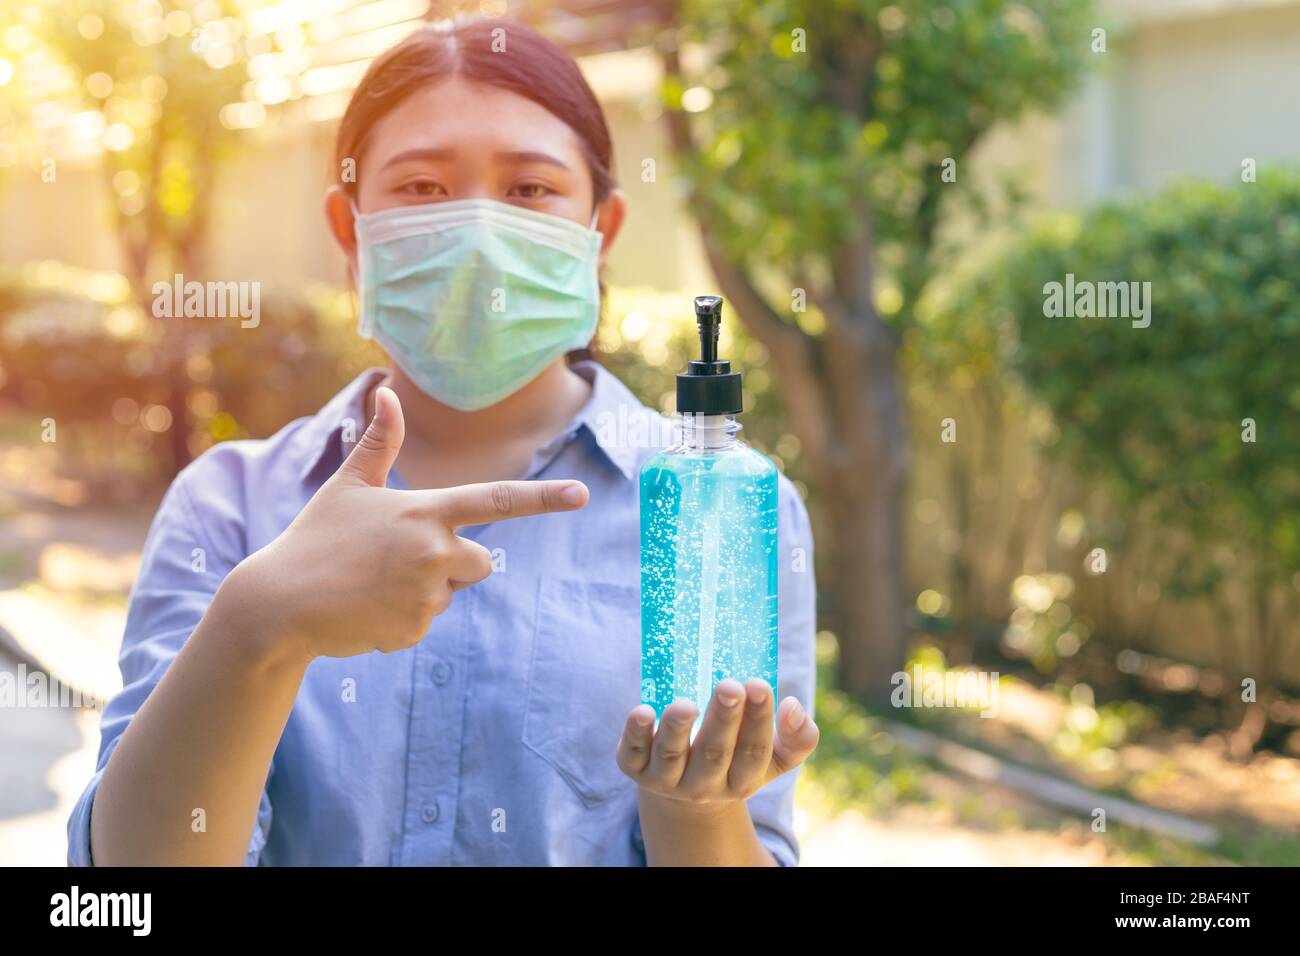 Personen, die eine Schutzmaske und ein alkoholhalses Handgel zum Selbstschutz vor Corona-Viren verwenden, Kovid 19 Stockfoto